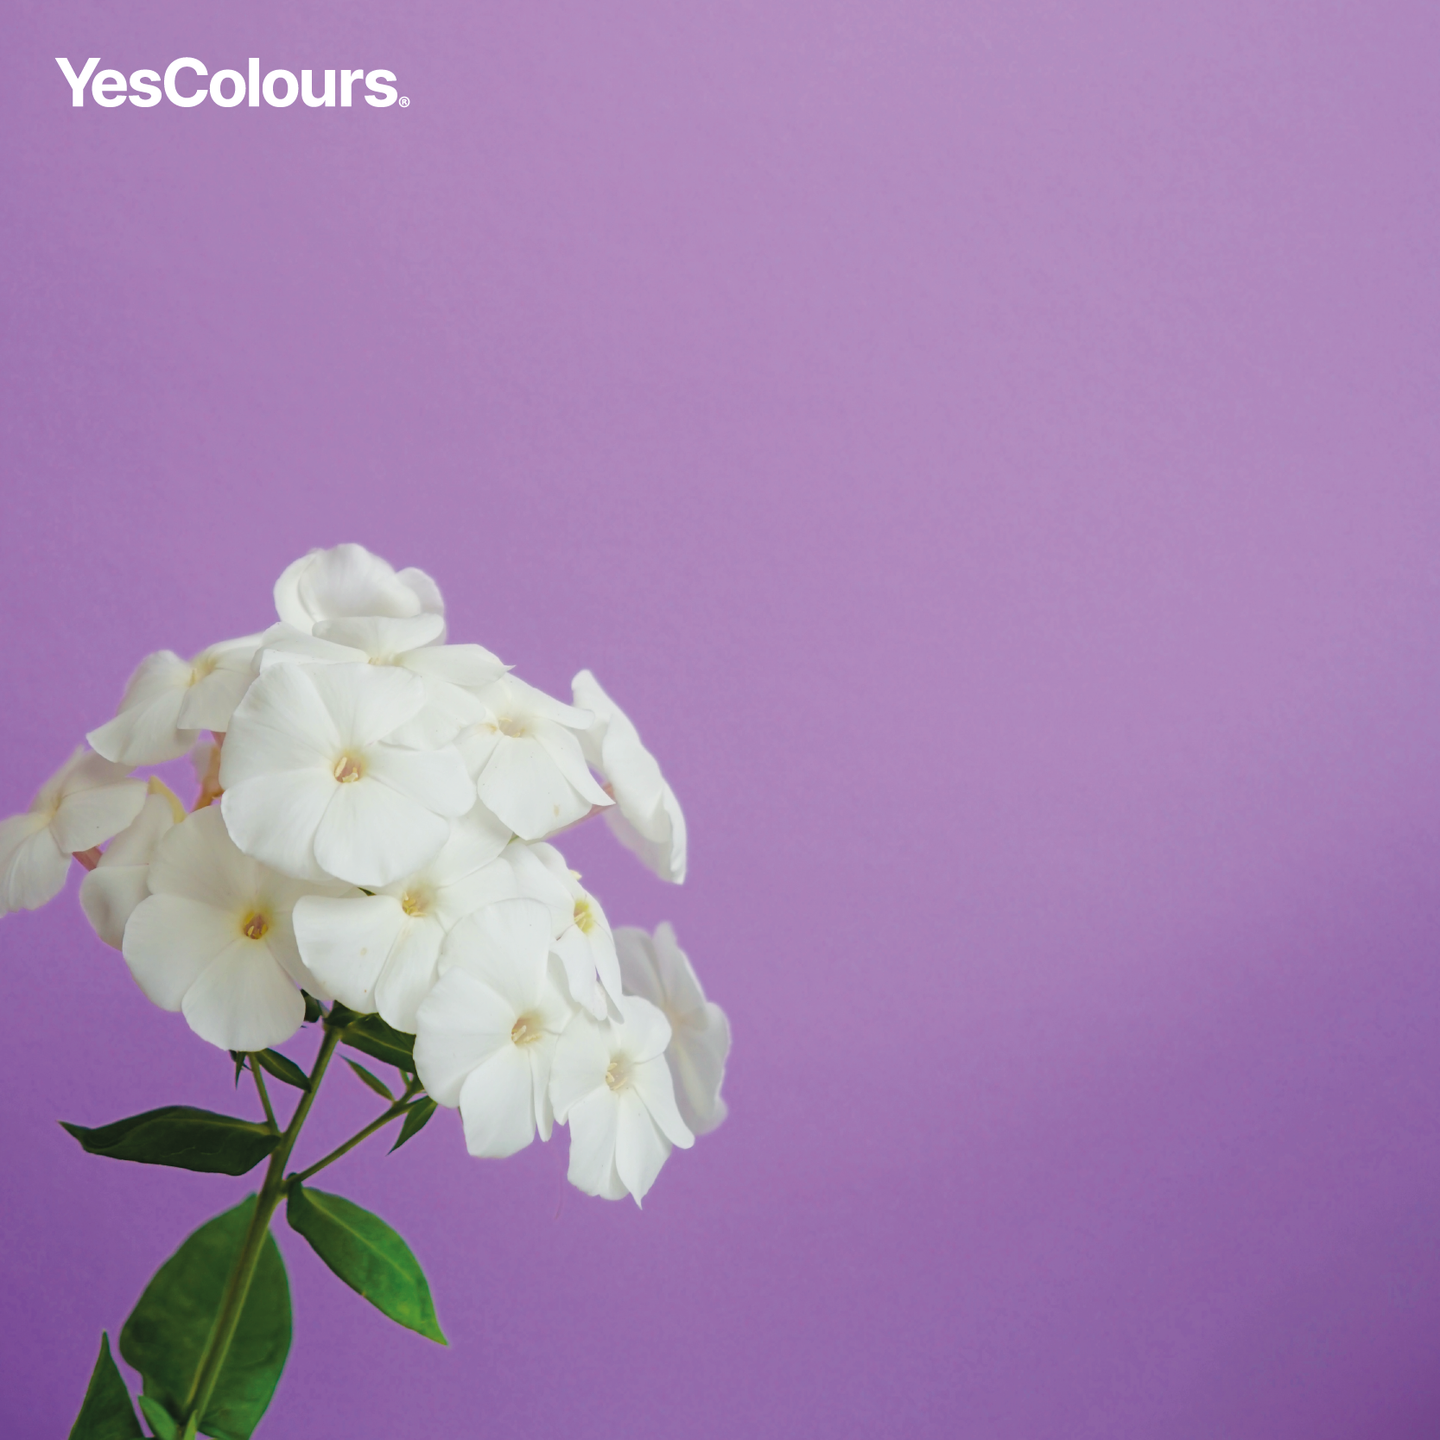 YesColours premium Joyful Lilac paint sample (60ml) Dulux paint, Coat Paint, Lick Paint